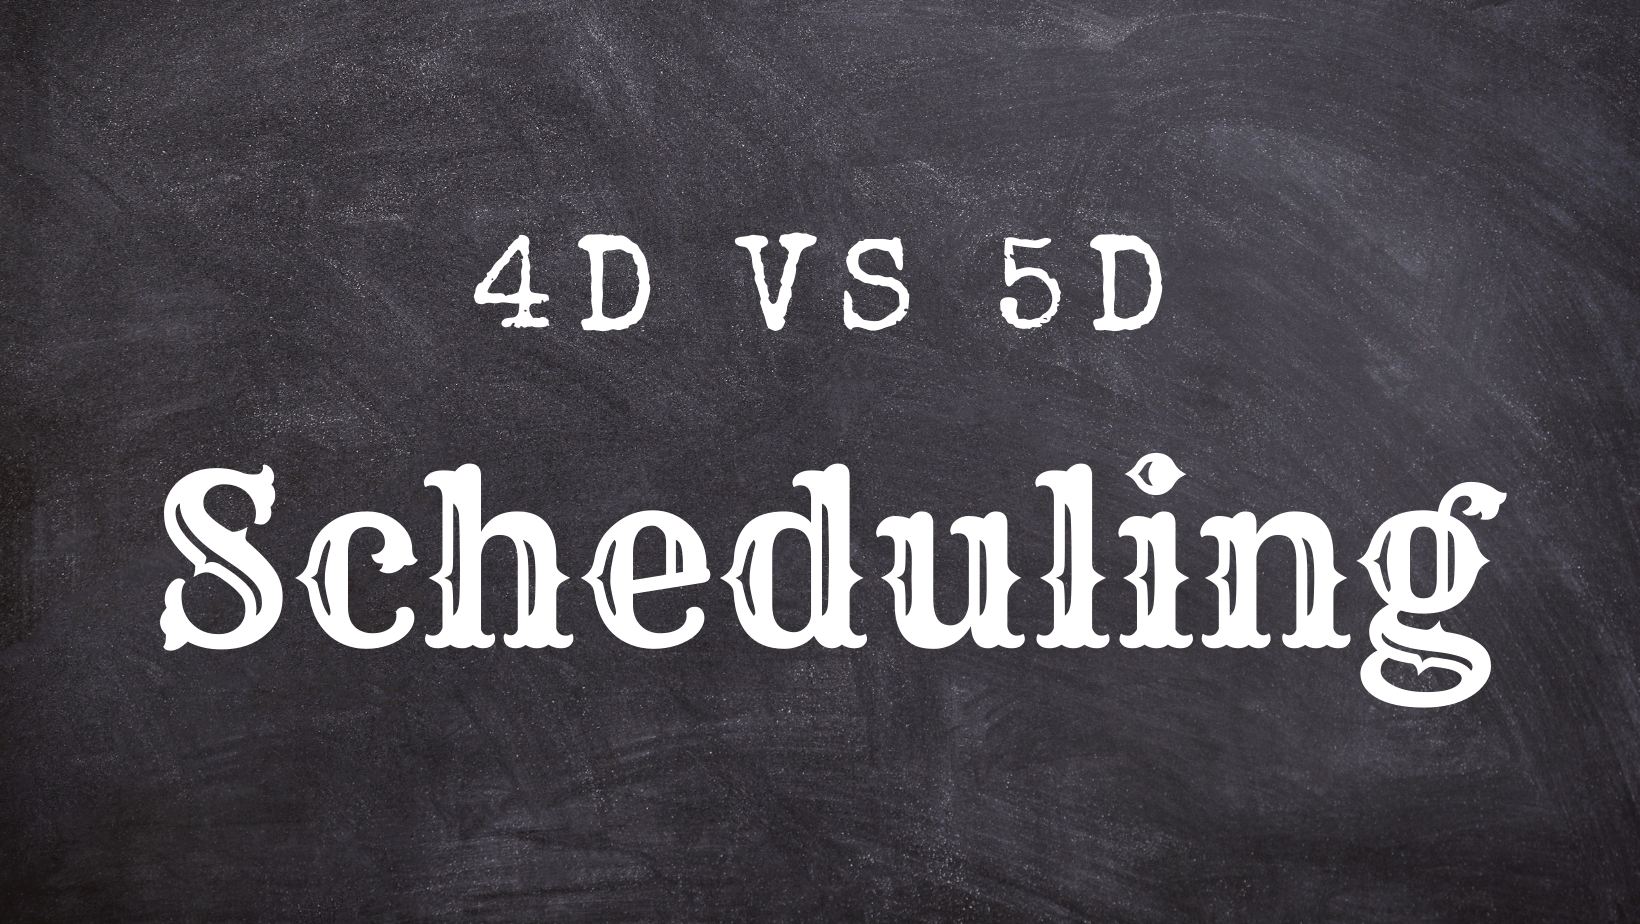 4D vs 5D Scheduling